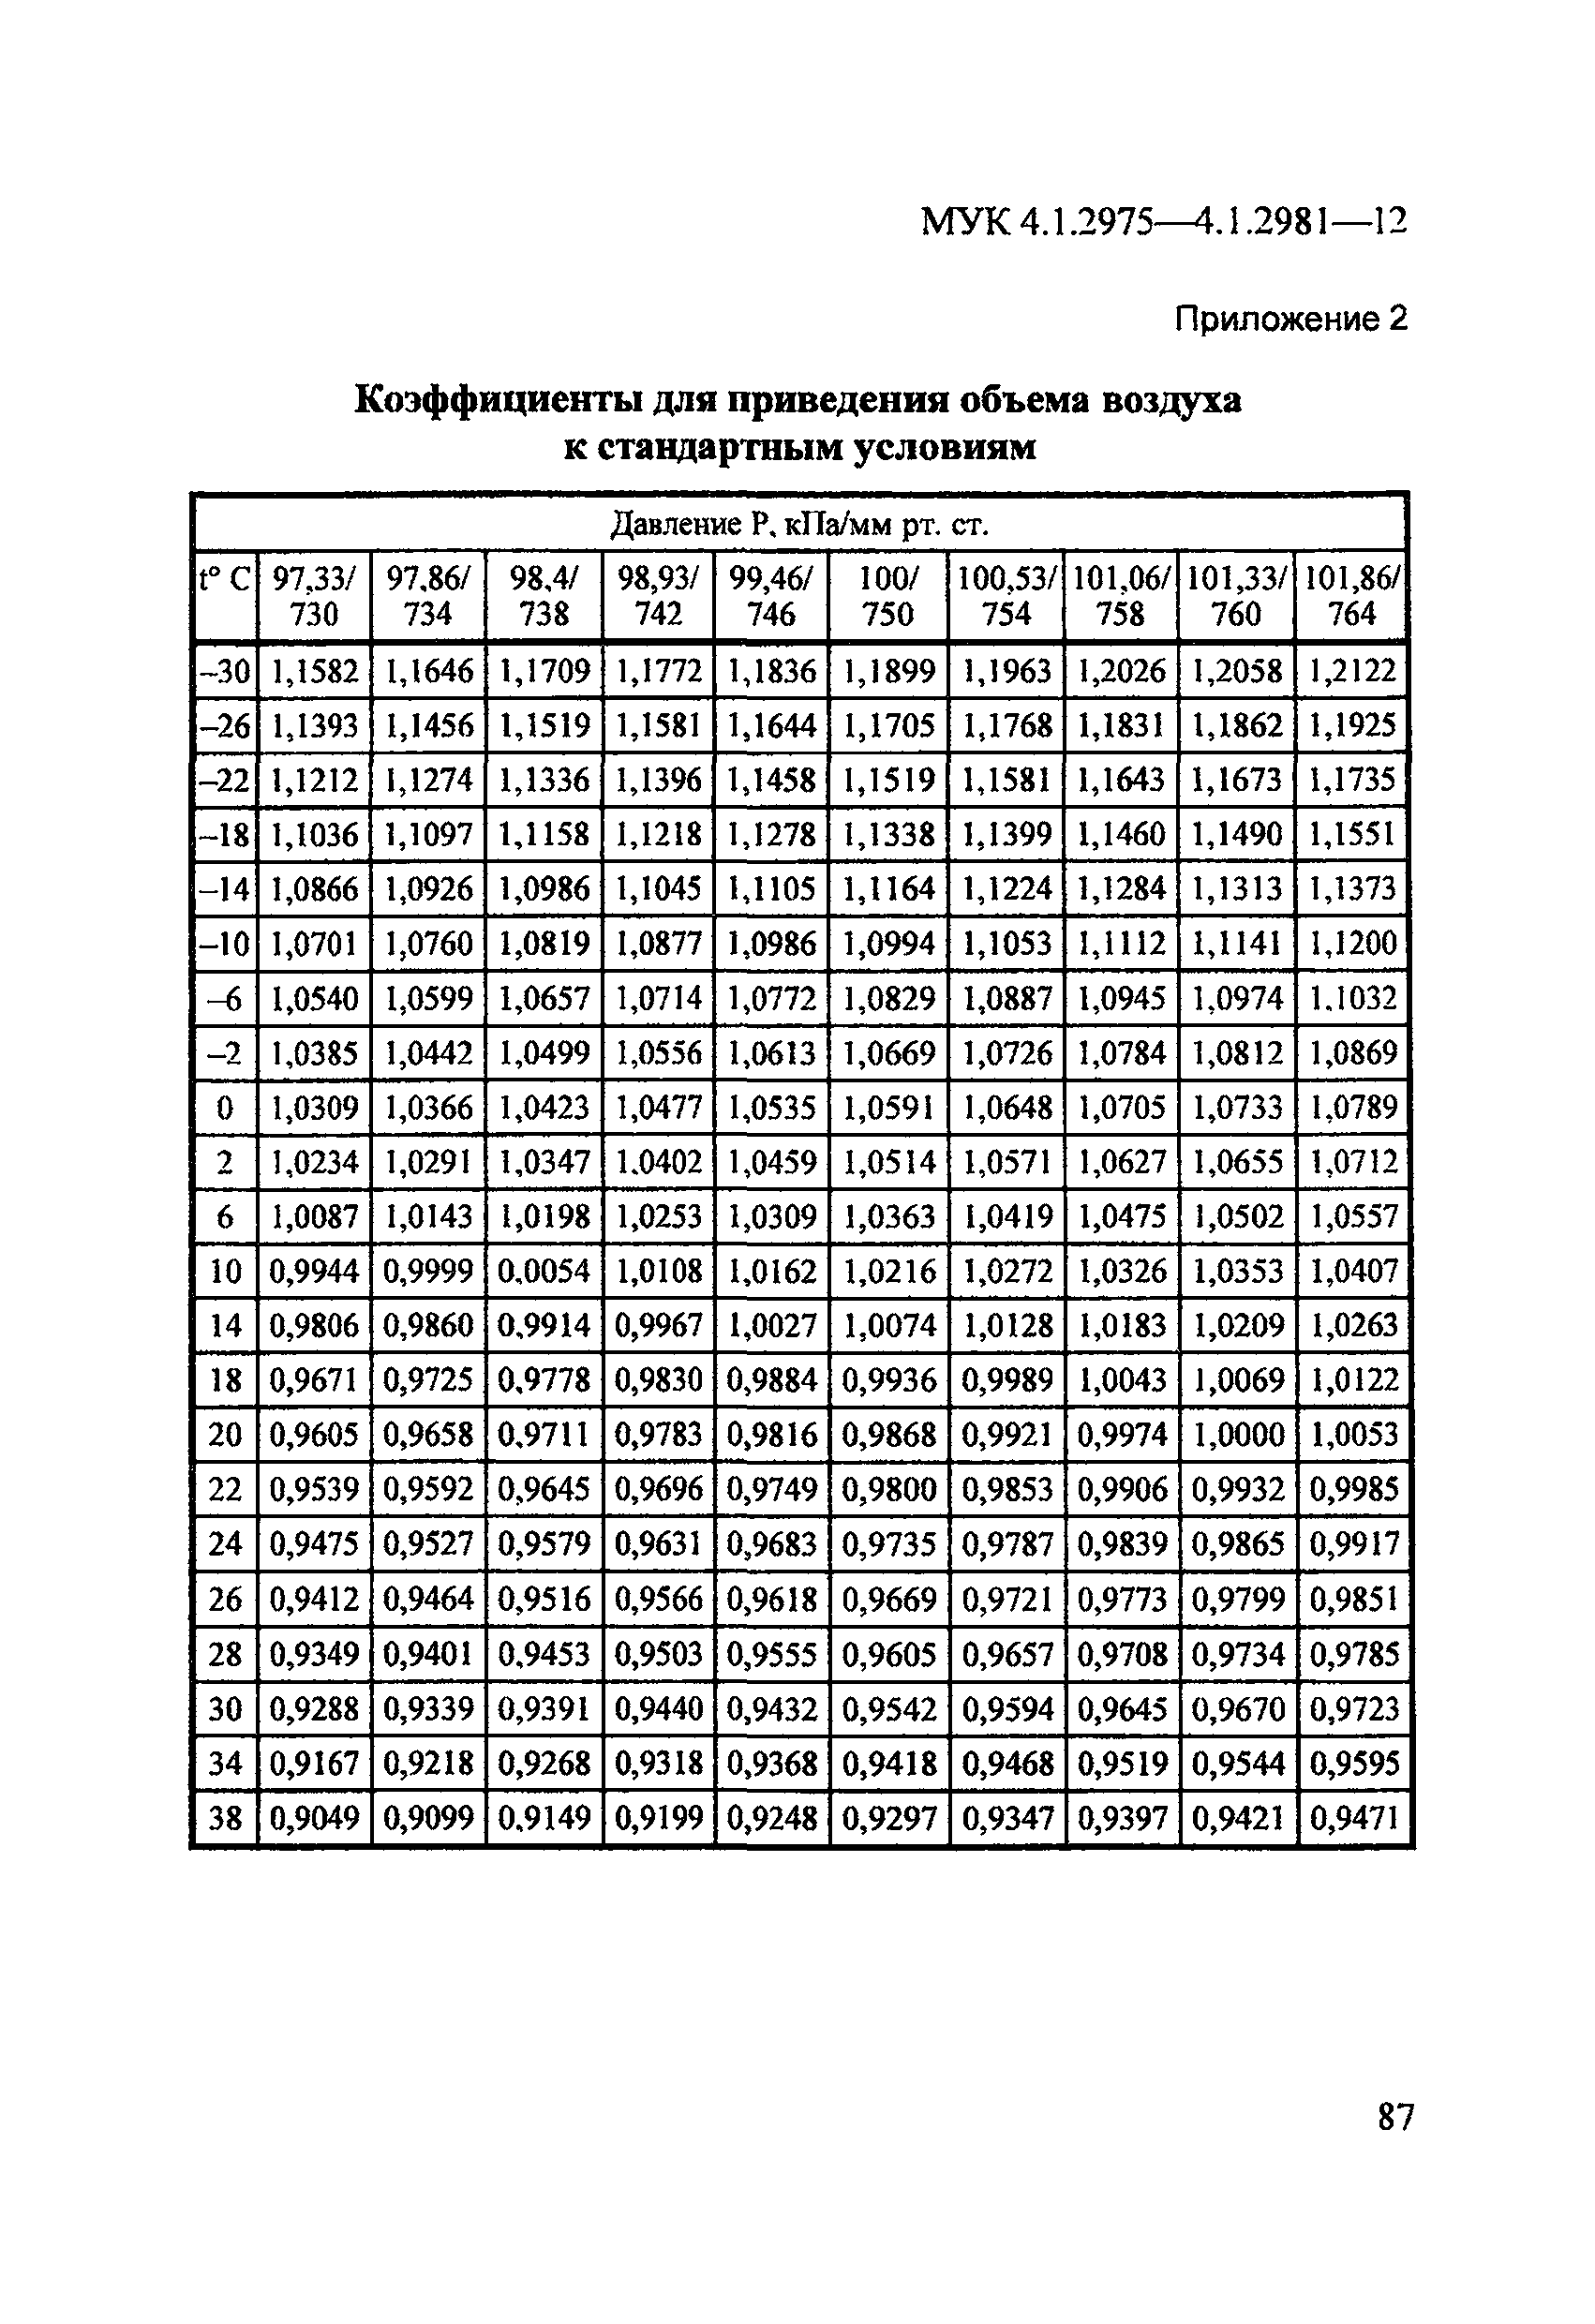 МУК 4.1.2976-12